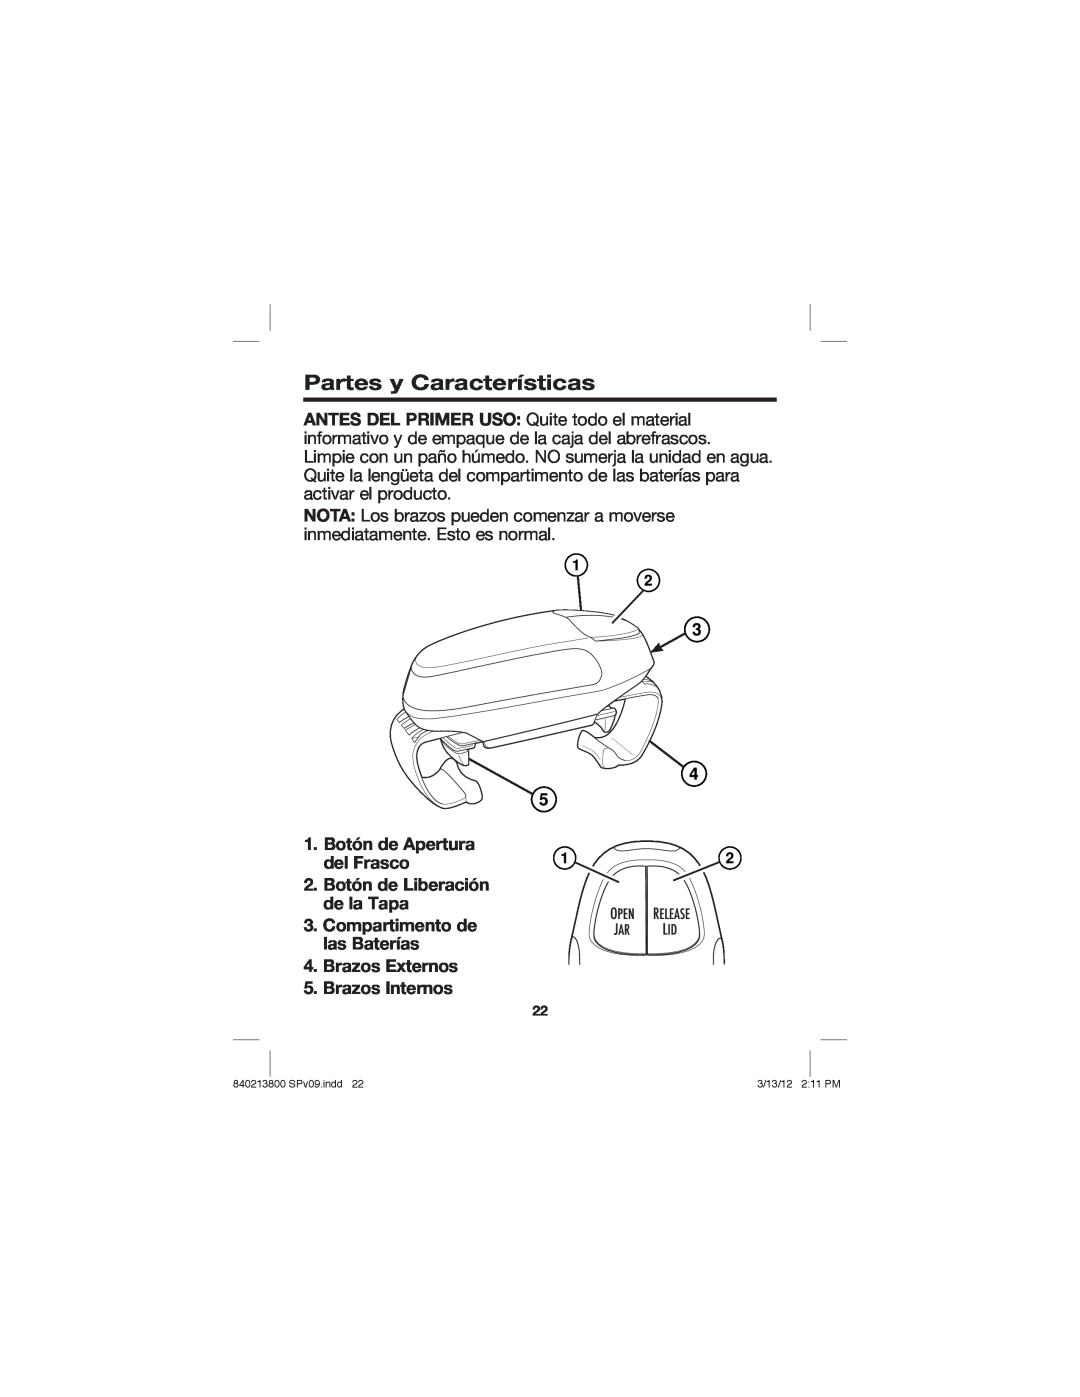 Hamilton Beach Jar Opener manual Partes y Características, Botón de Apertura del Frasco, 2.Botón de Liberación de la Tapa 